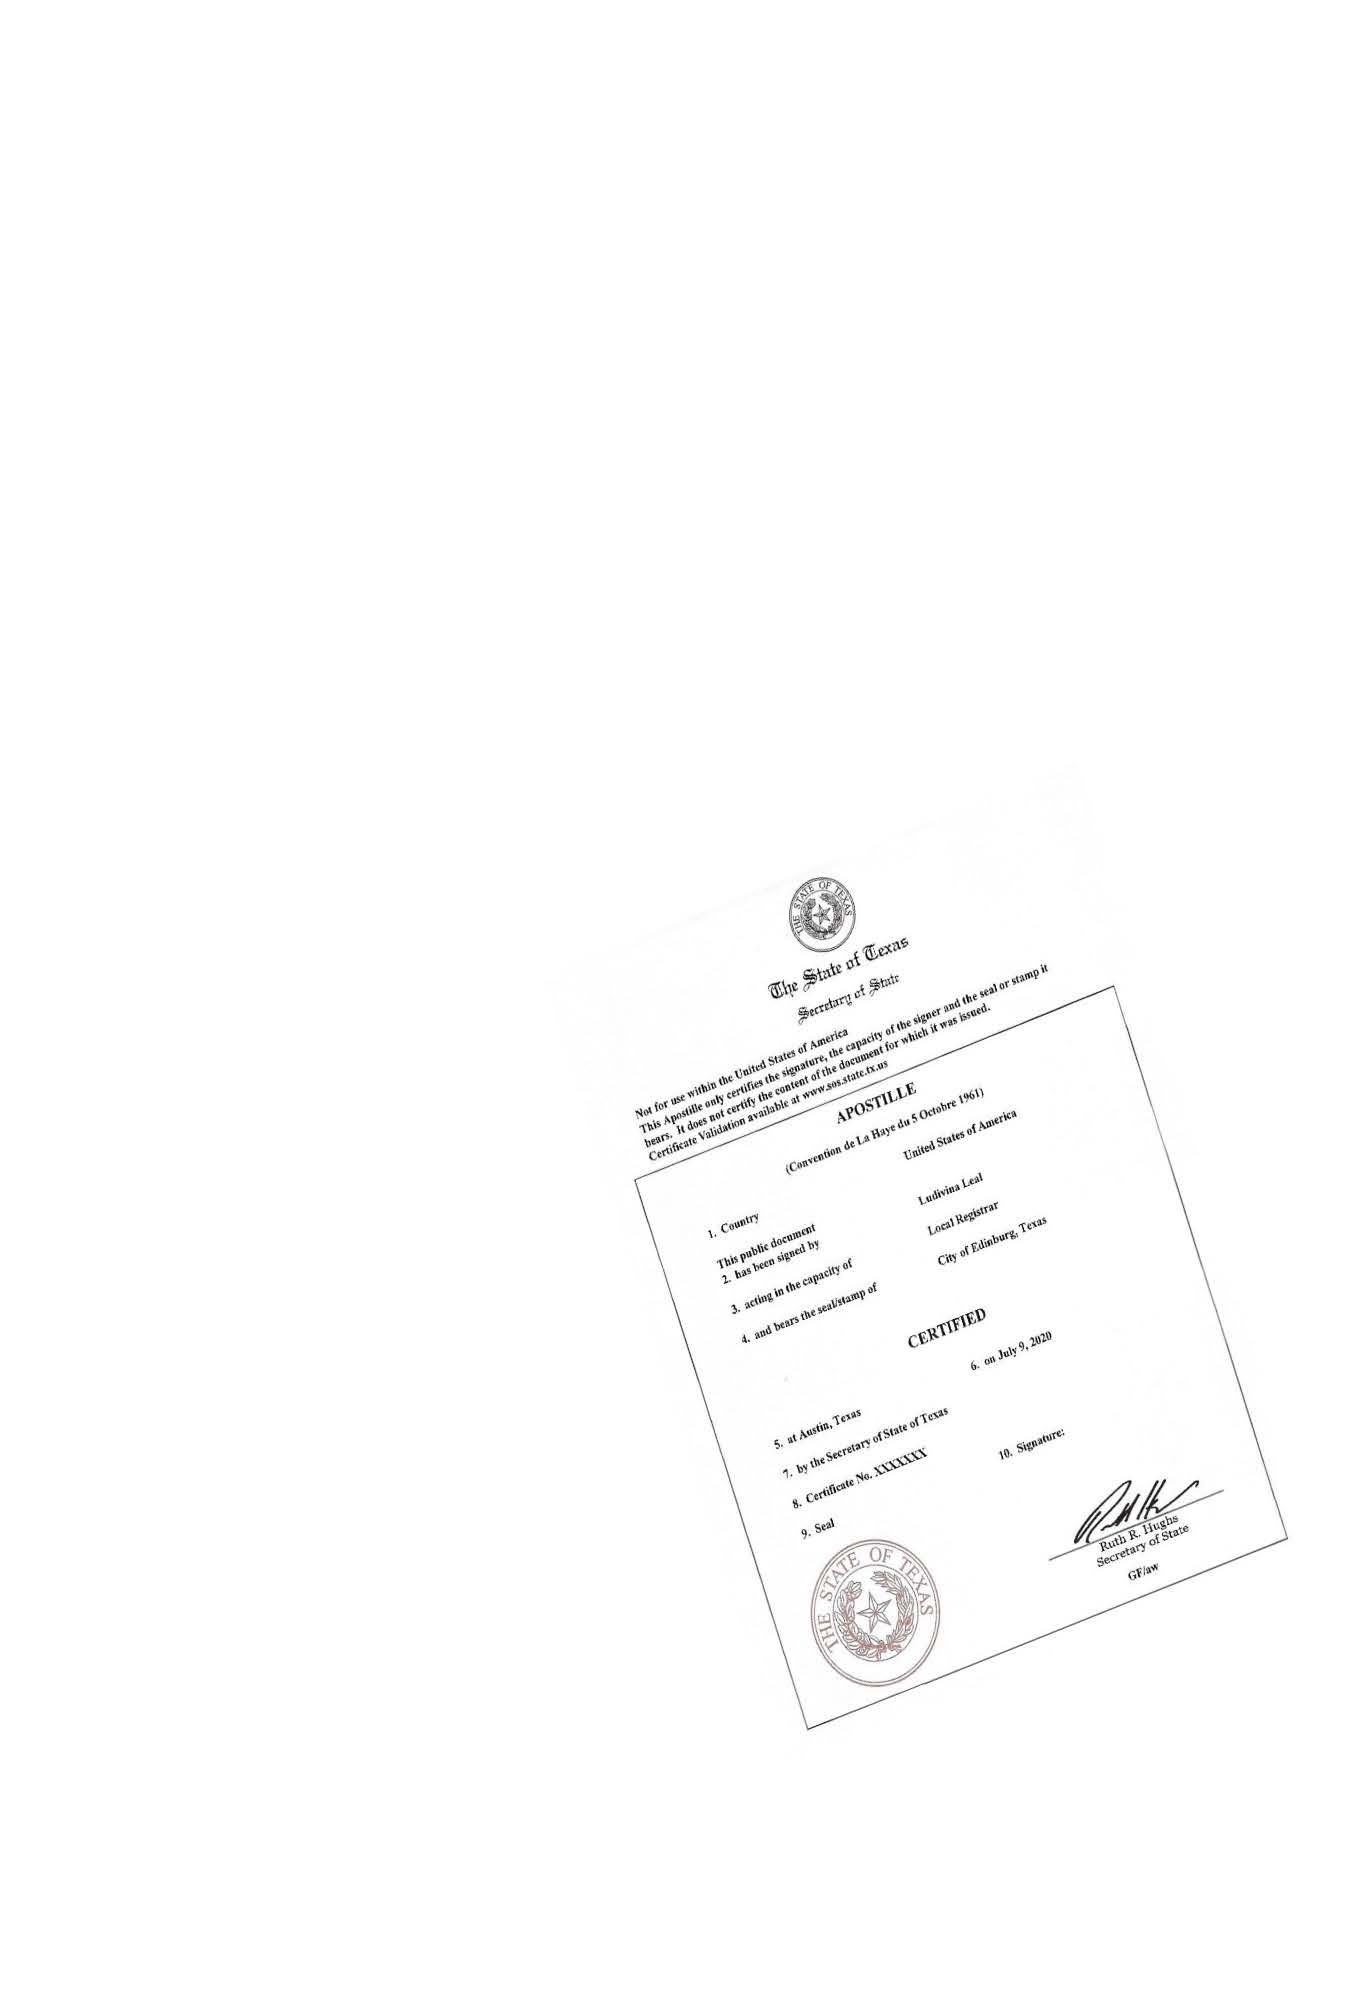 Apostille Birth Certificate in Texas Apostille services in Texas